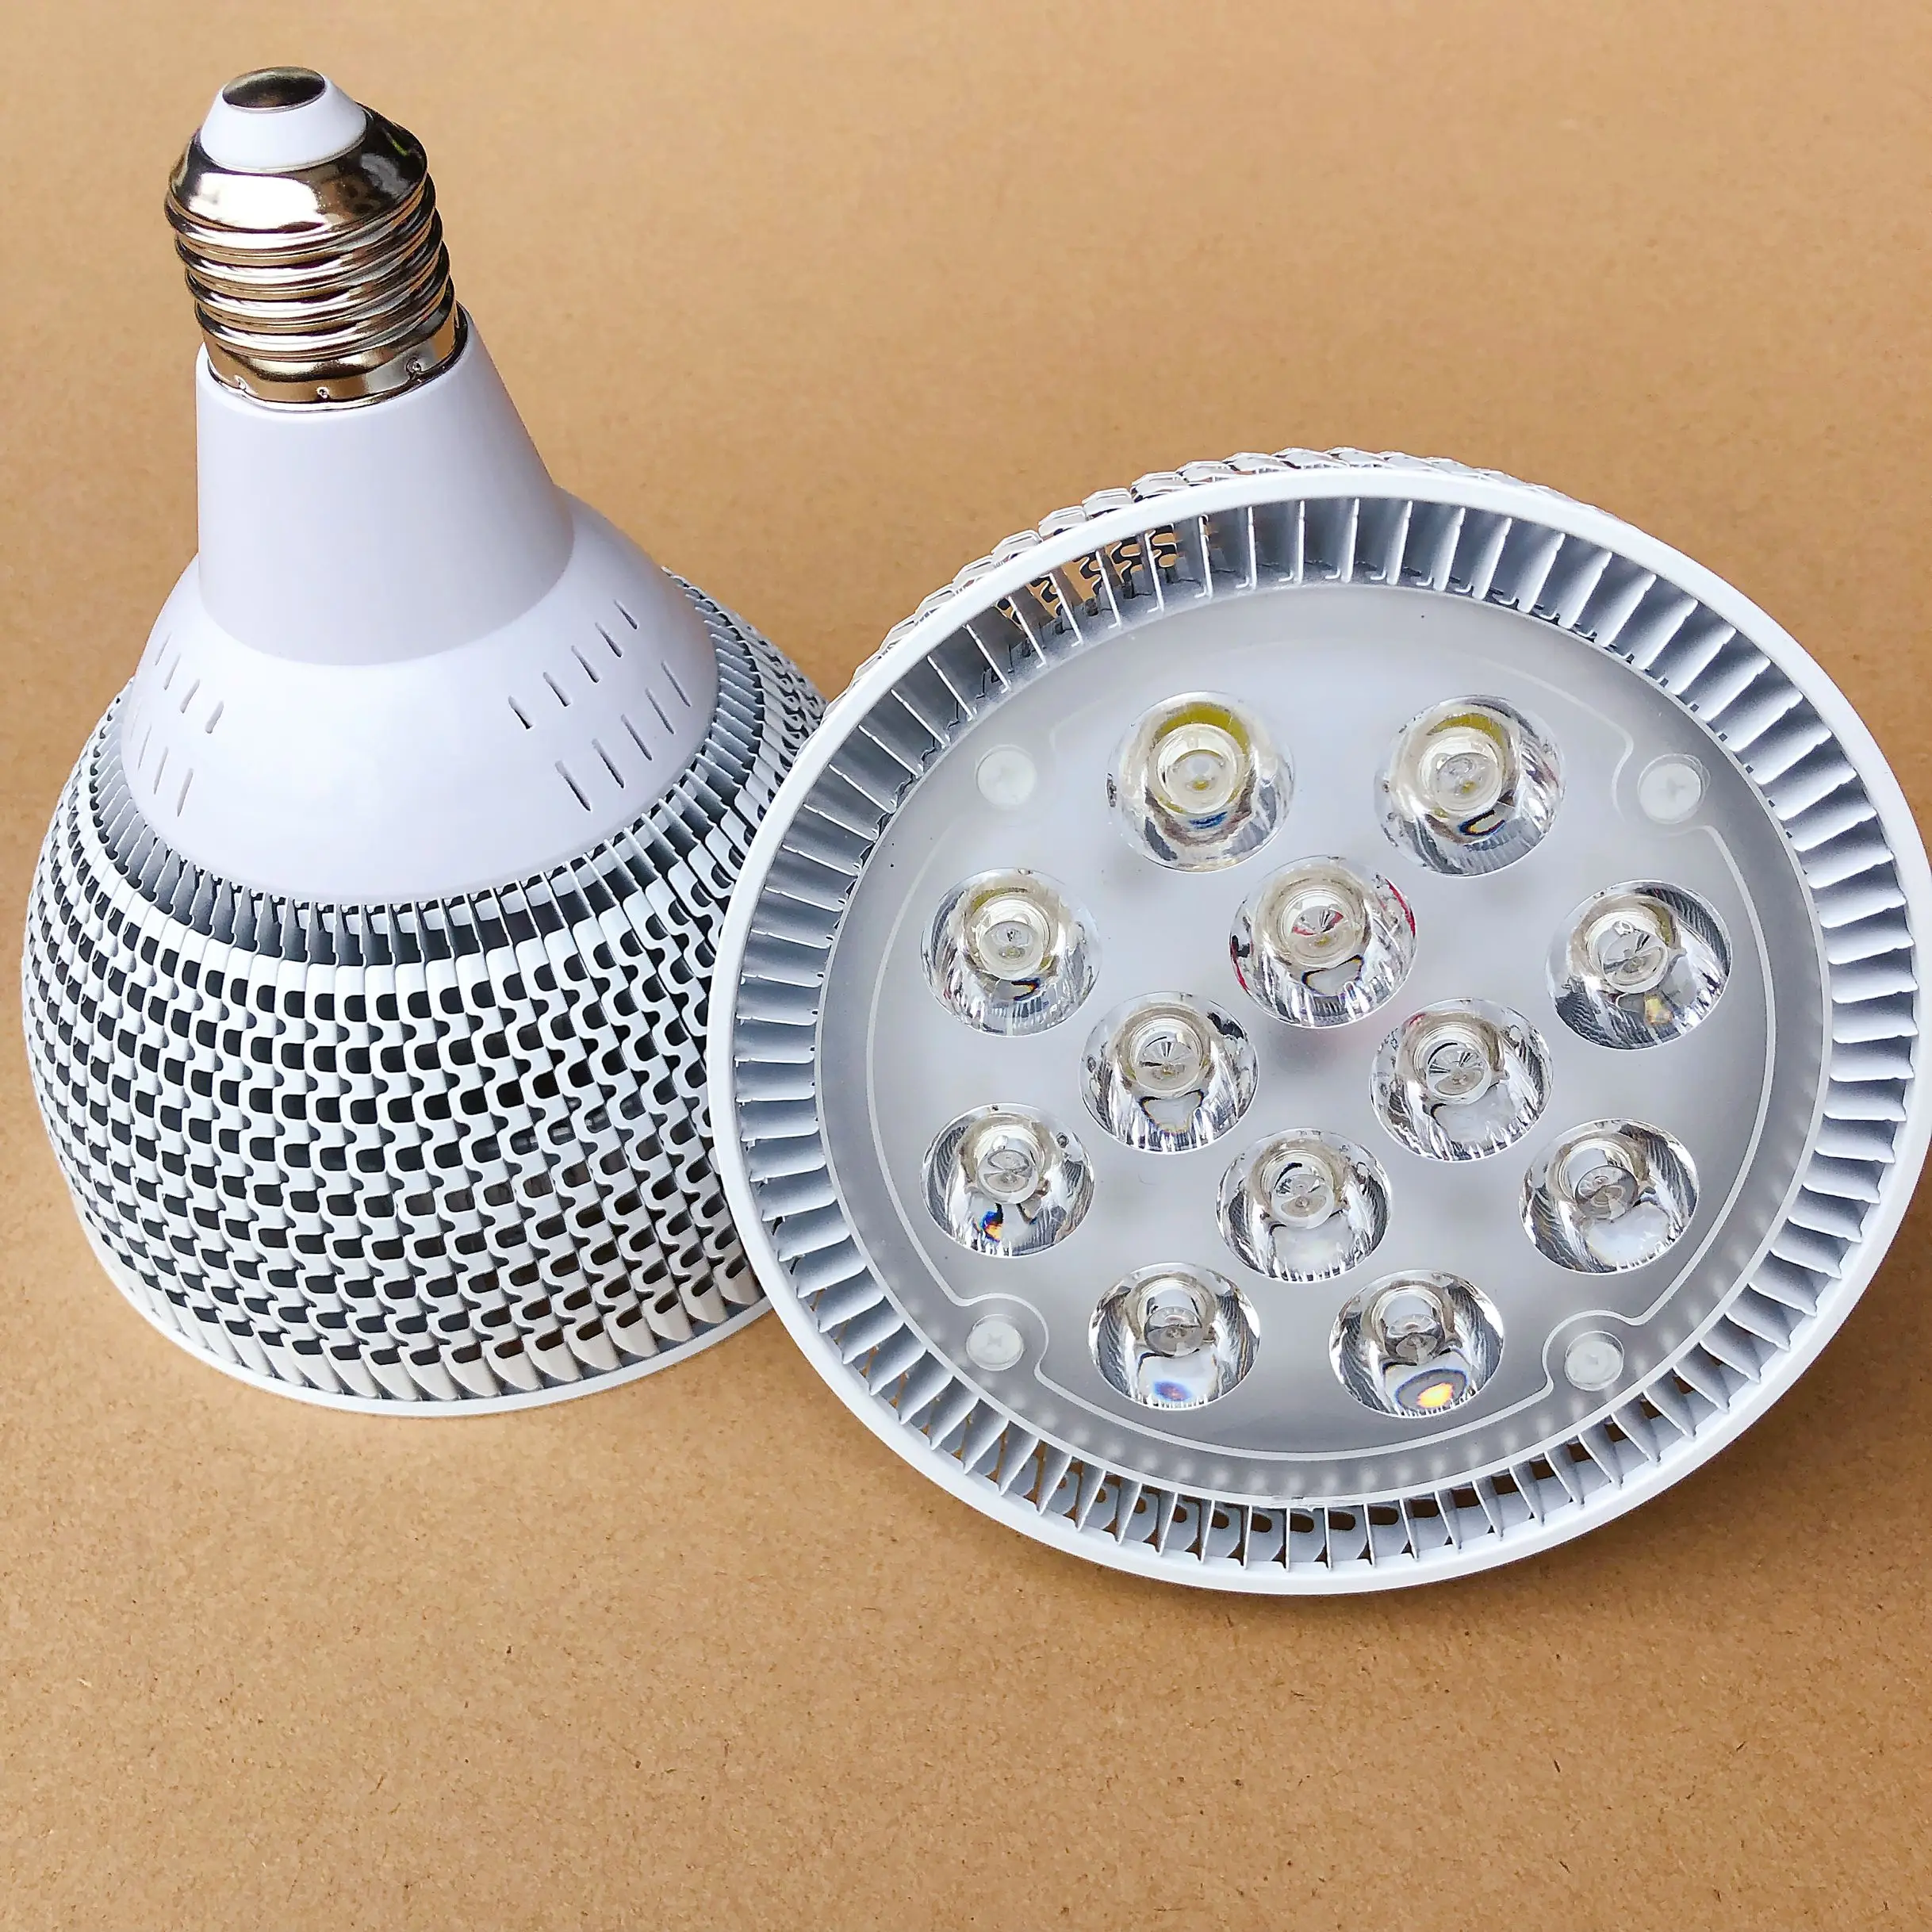 2pcs High Power LED Spot Light 24W E27 E26 PAR38 LED Bulb Lamp 12X2W AC110V 220V 3000K/4000K/6000K LED Spotlight Dimmable